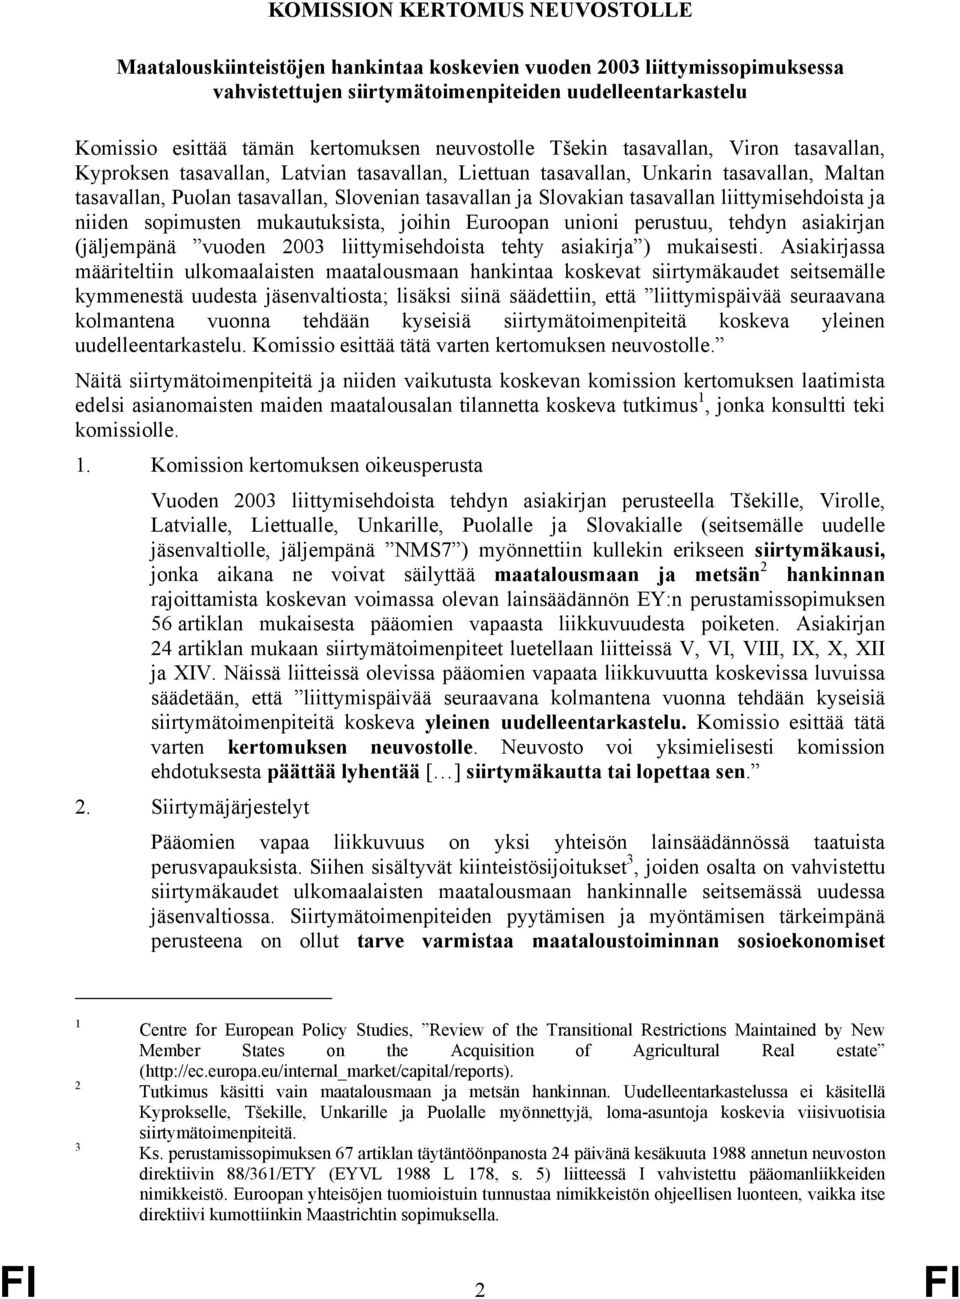 tasavallan ja Slovakian tasavallan liittymisehdoista ja niiden sopimusten mukautuksista, joihin Euroopan unioni perustuu, tehdyn asiakirjan (jäljempänä vuoden 2003 liittymisehdoista tehty asiakirja )